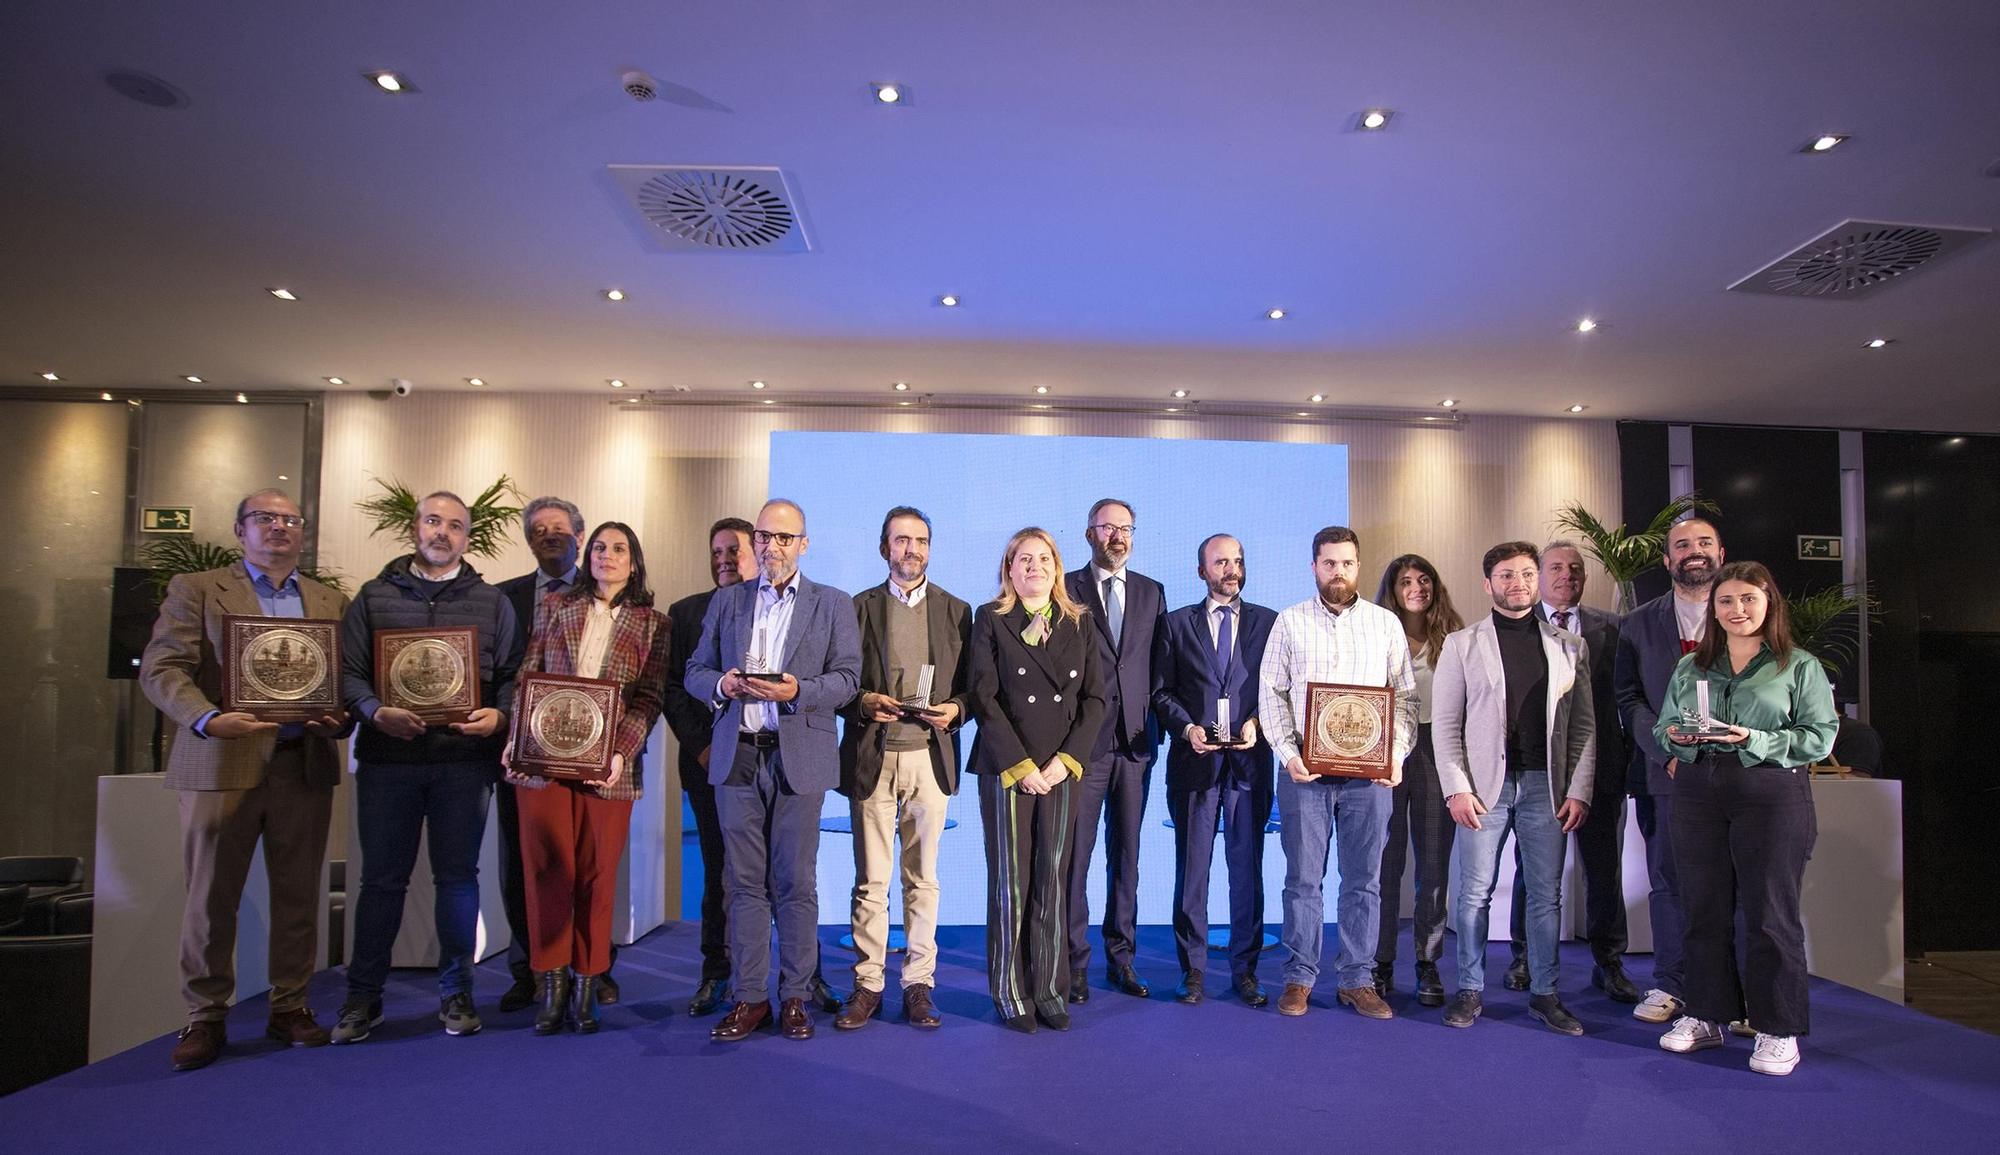 Fundación Magtel celebra la IV edición de sus Premios en el ámbito social